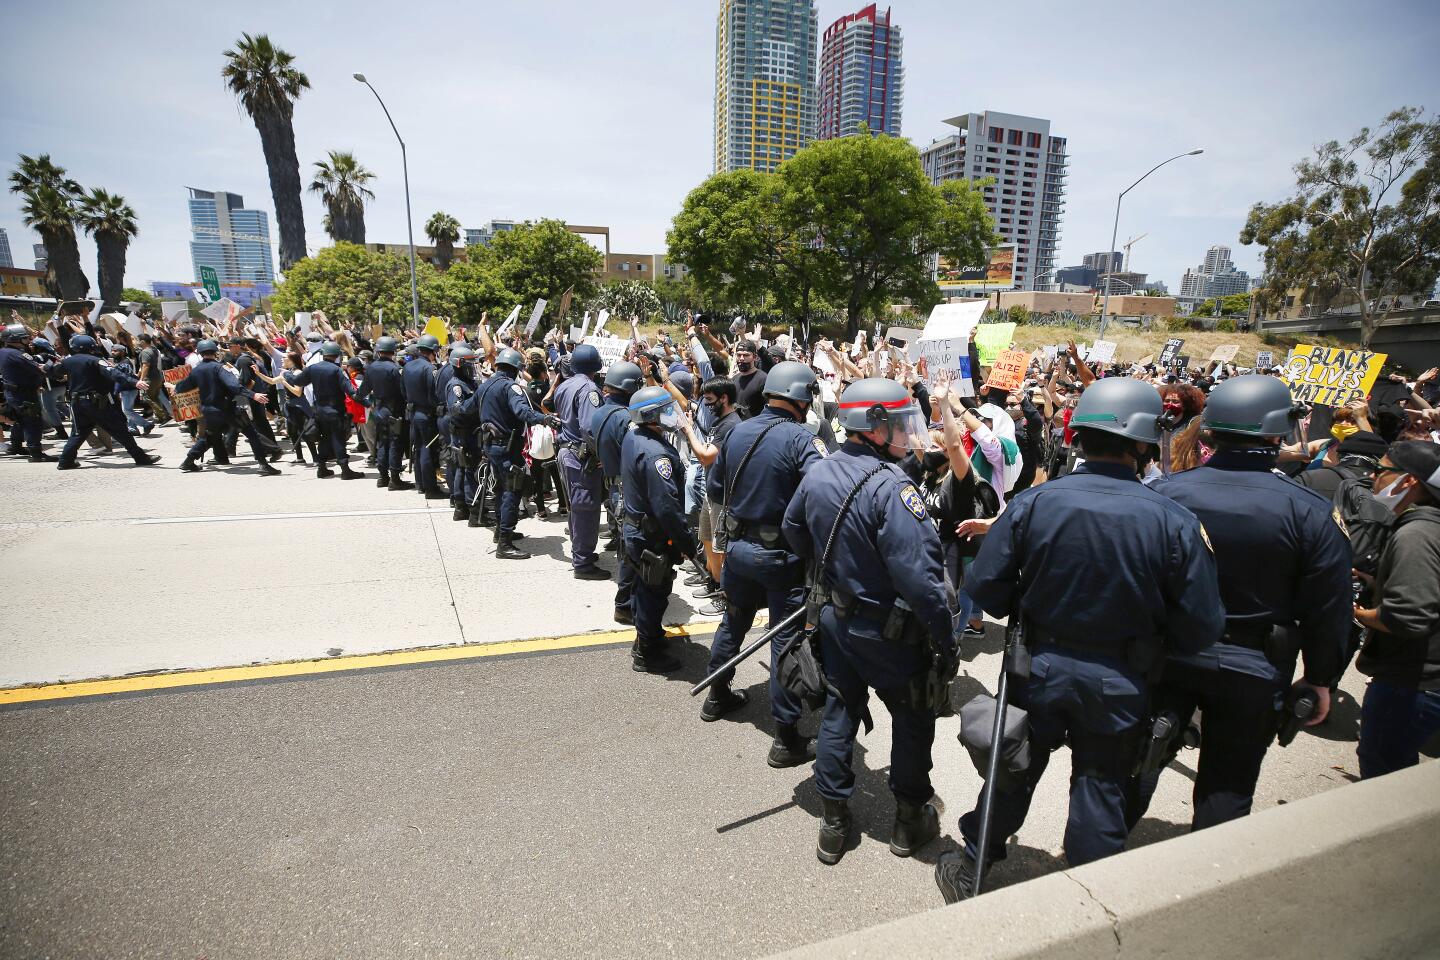 FOTOS: Protestas en el centro de San Diego - Los Angeles Times